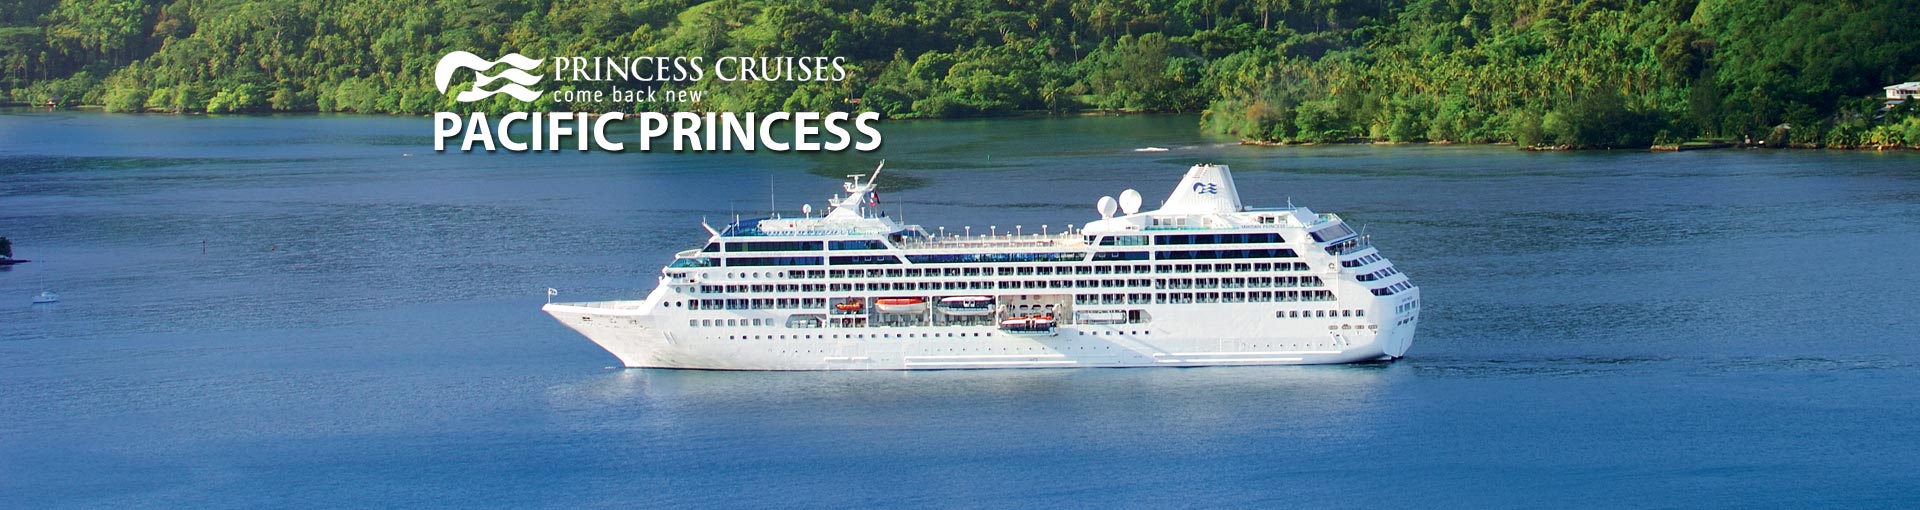 How do you receive Princess Cruise Line deals?